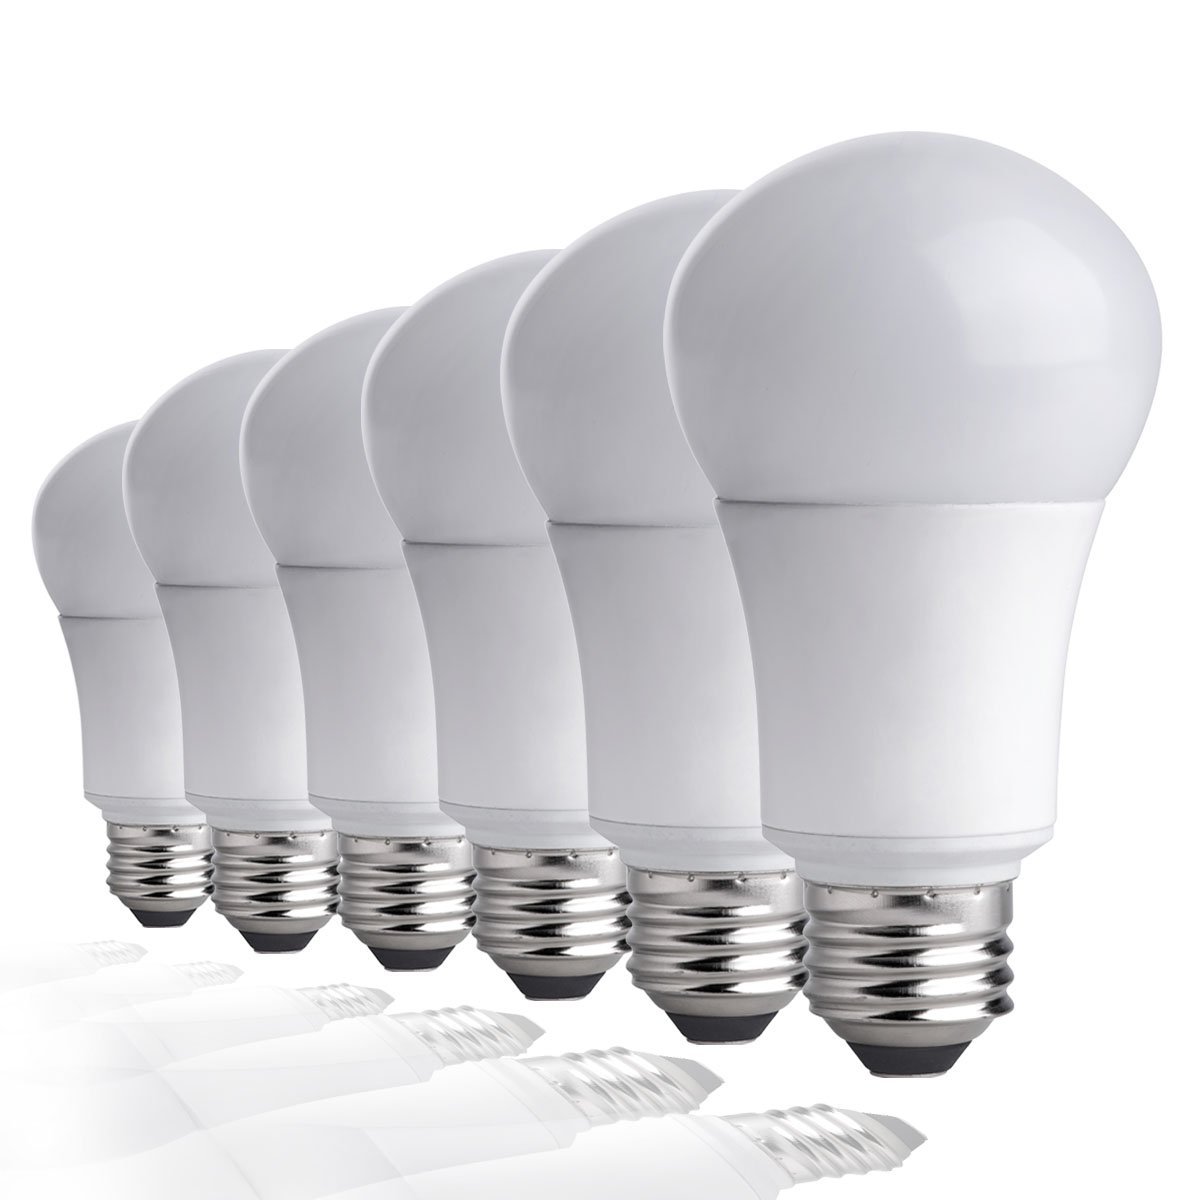 TCP 6-pack of LED soft white light bulbs for $10